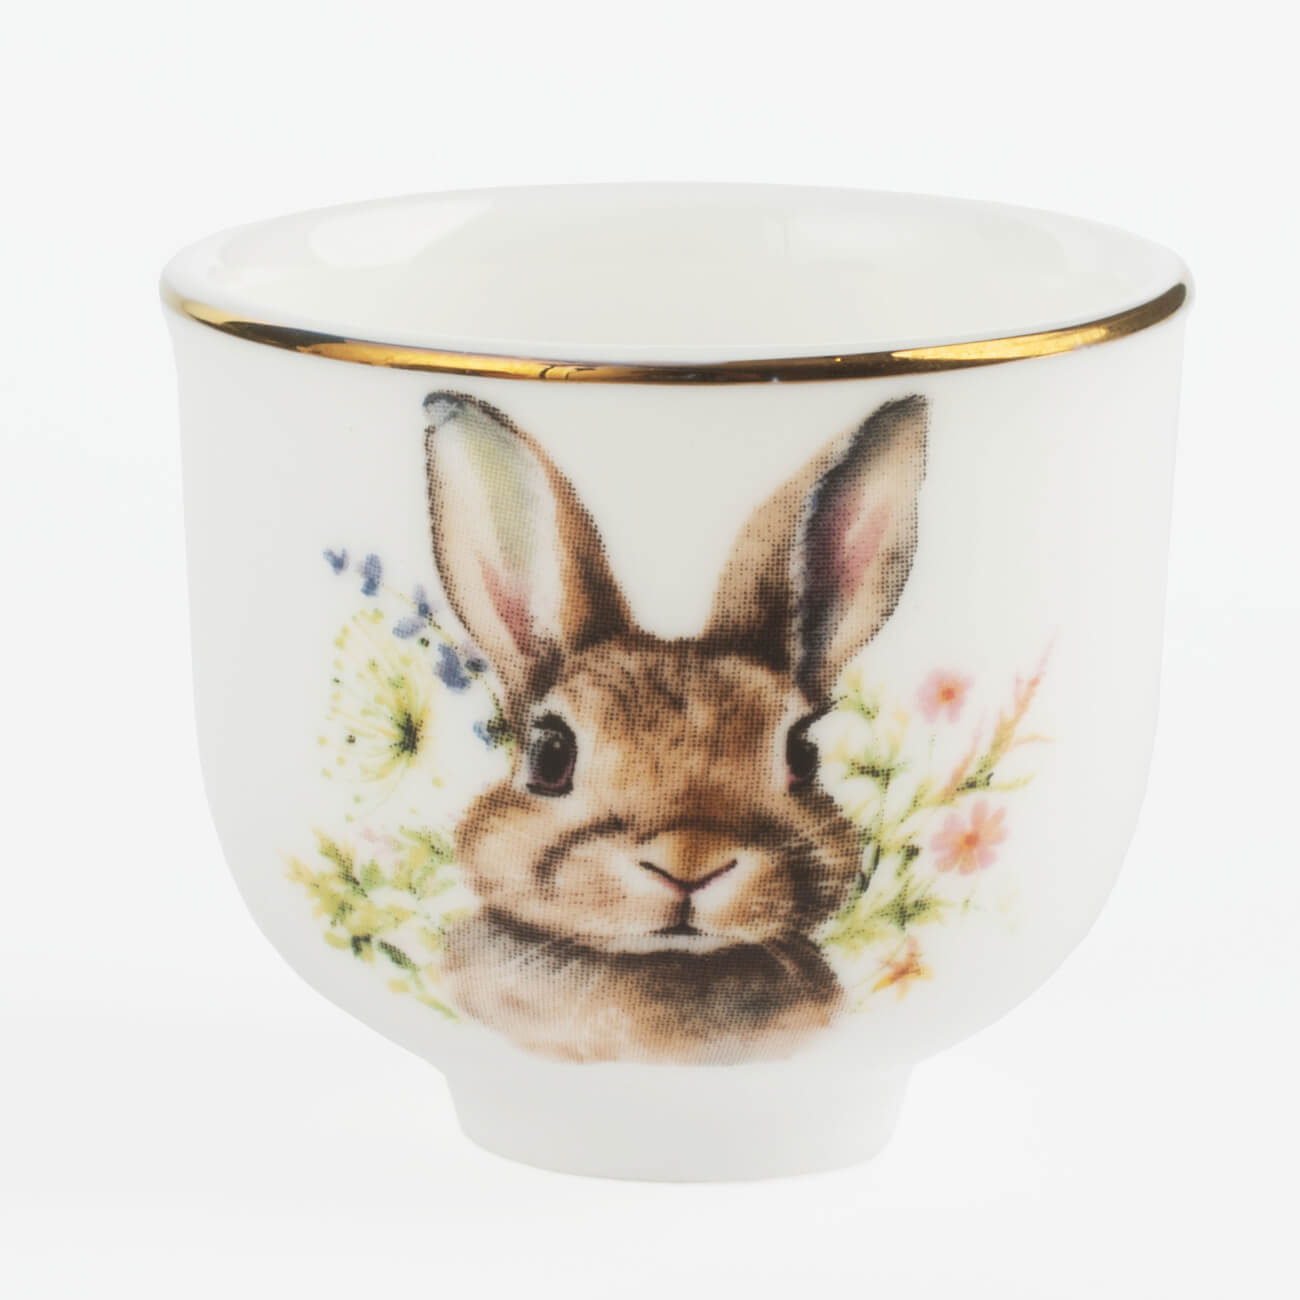 Подставка для яйца, 4 см, фарфор F, белая, с золотистым кантом, Кролик в цветах, Natural Easter изображение № 1